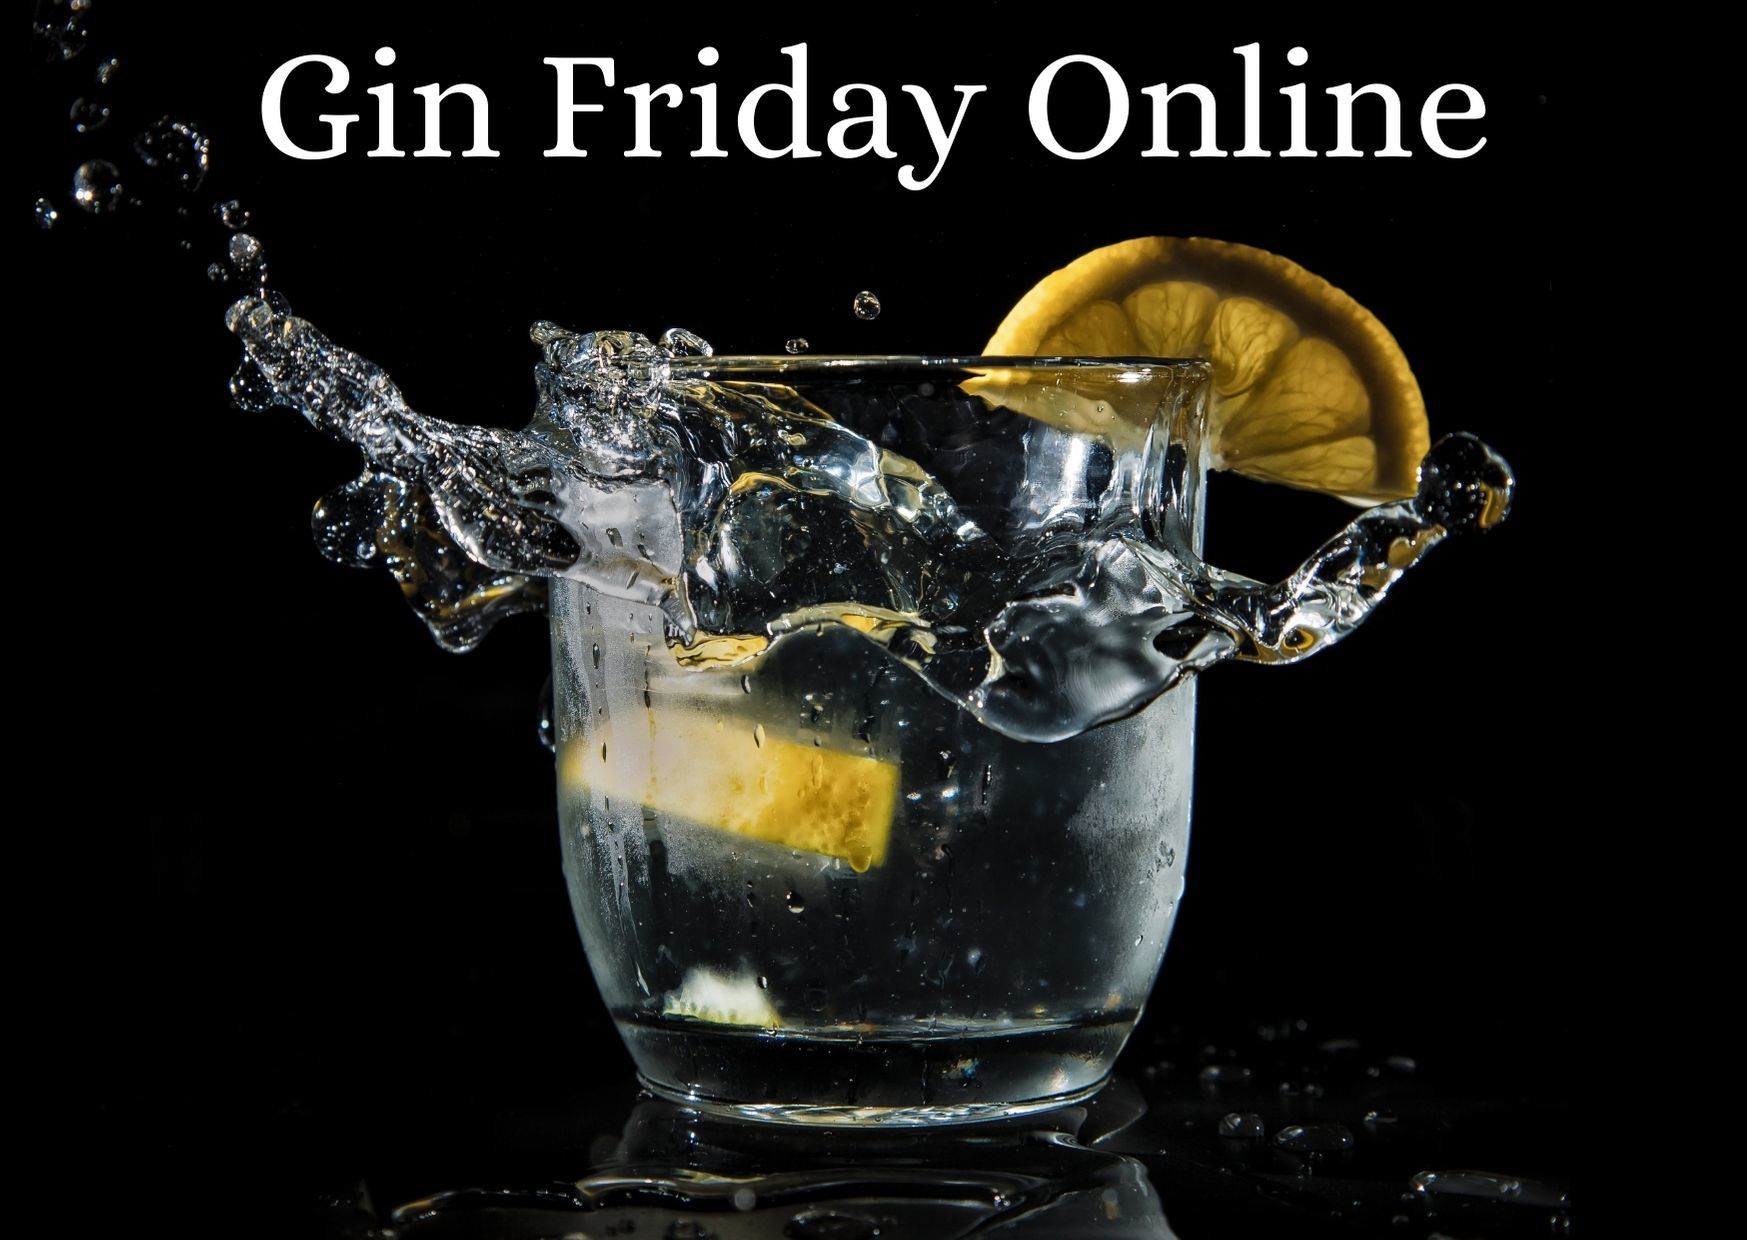 Online Gin Tasting!